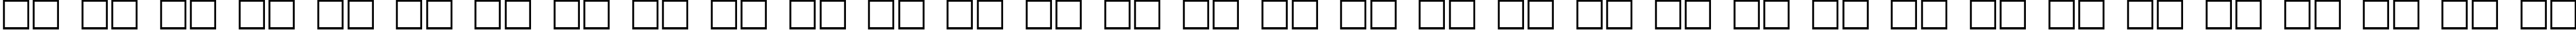 Пример написания русского алфавита шрифтом Circuit Scraping